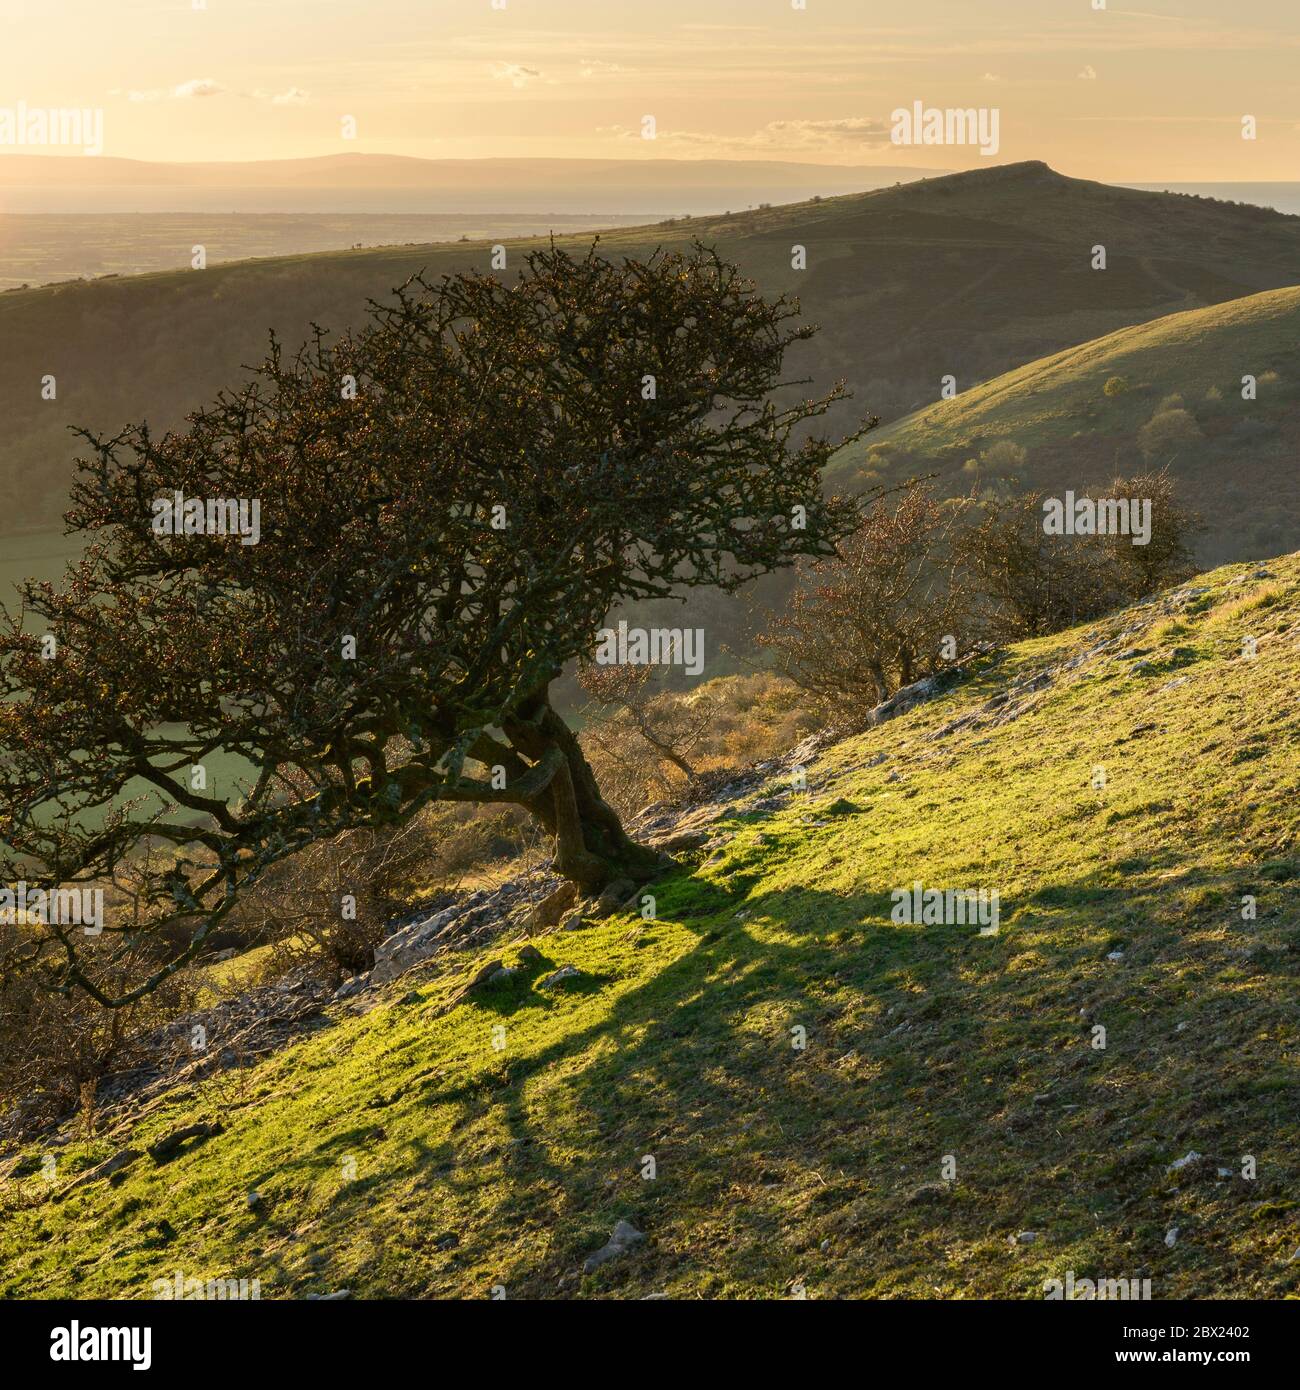 Ein einbeiner Weißdornbaum auf Schwankende Down, Somerset, mit Blick auf Crook Peak im Hintergrund. Stockfoto